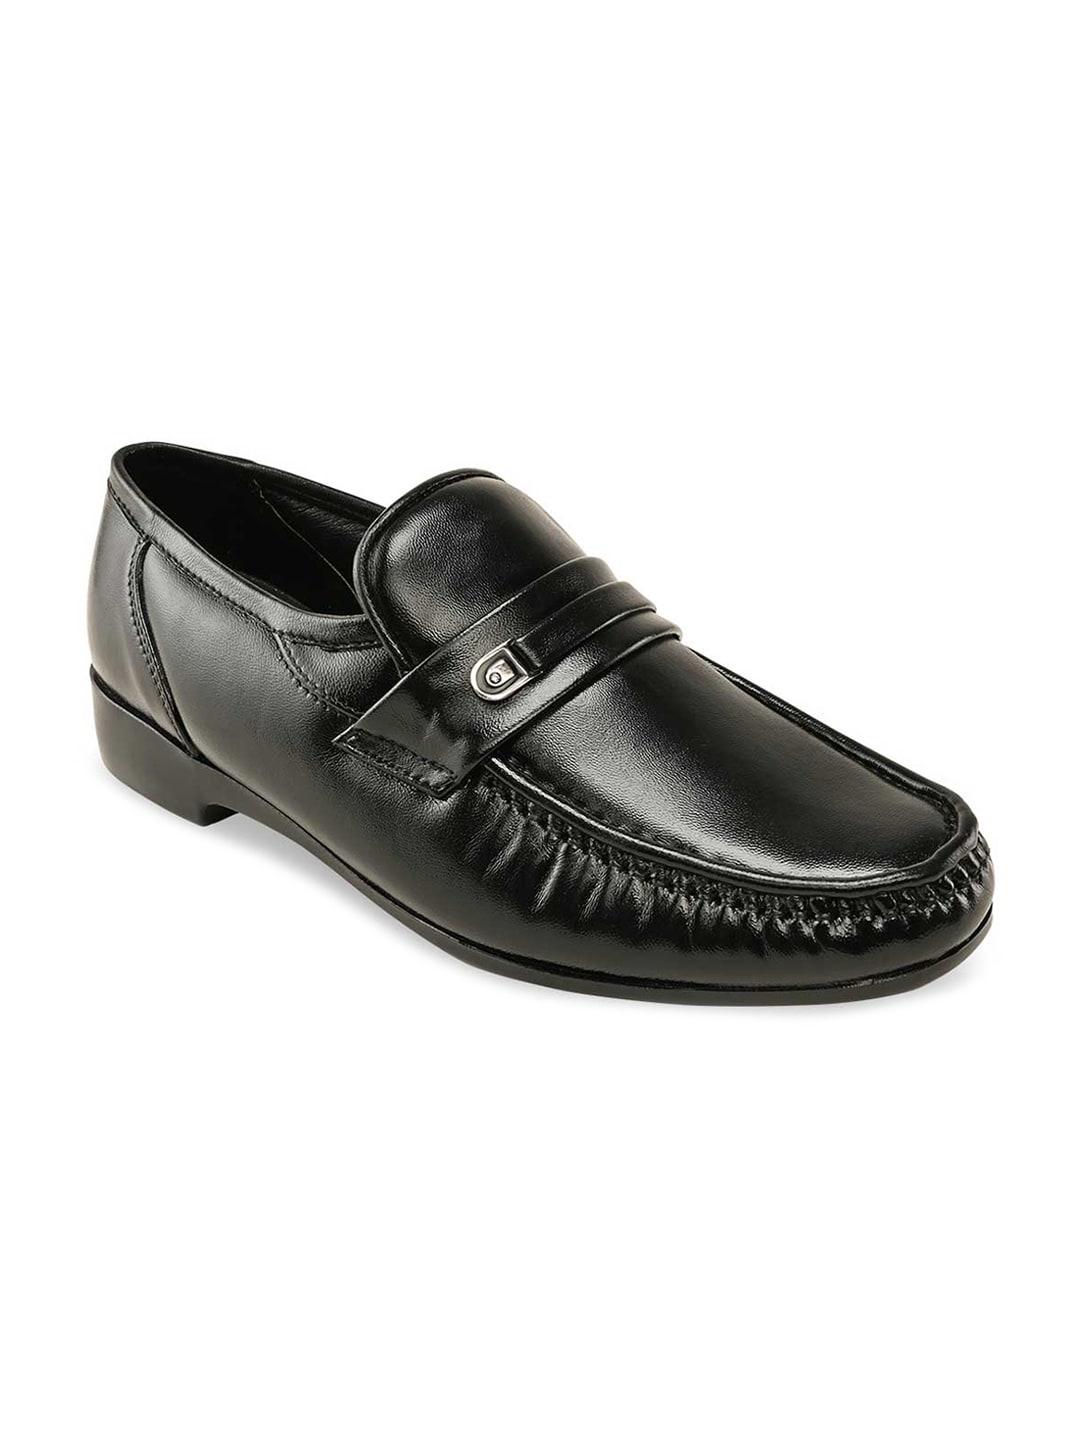 Regal Men Black Solid Leather Formal  Slip On Shoes